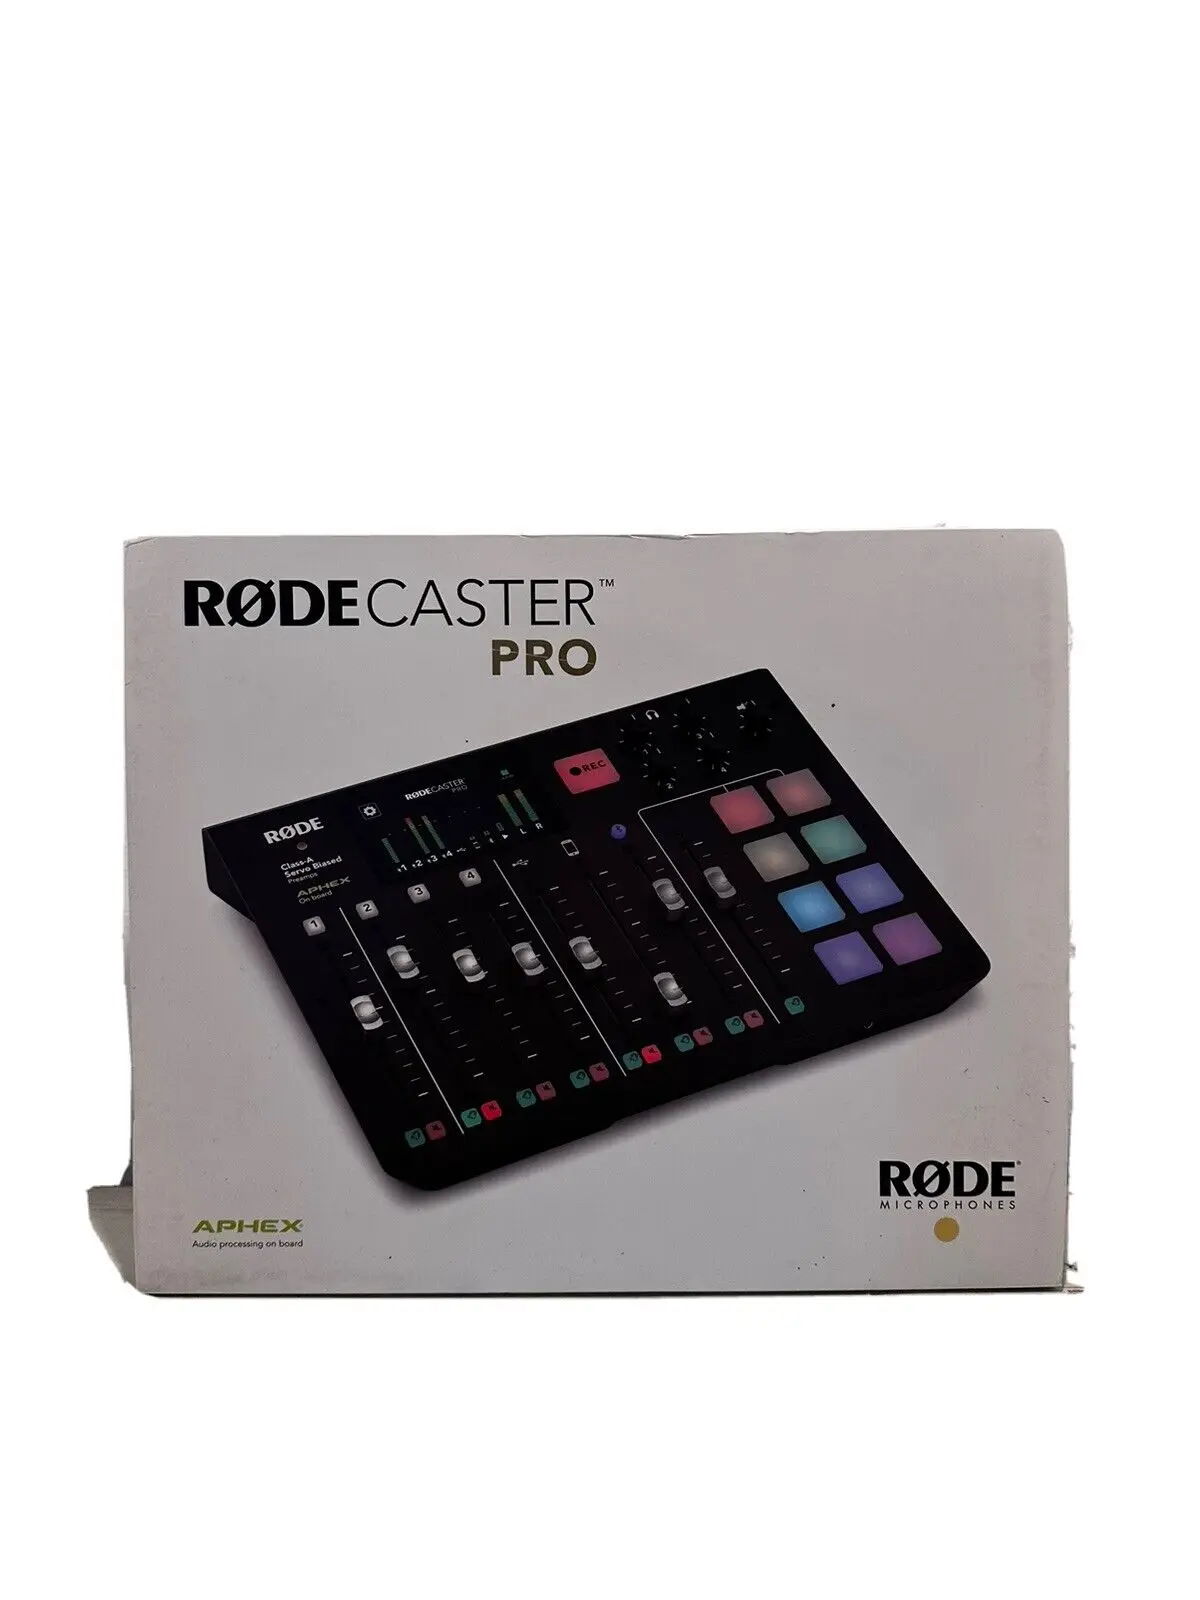 Летняя скидка в размере 50% на новые микрофоны Rode RODECaster Pro